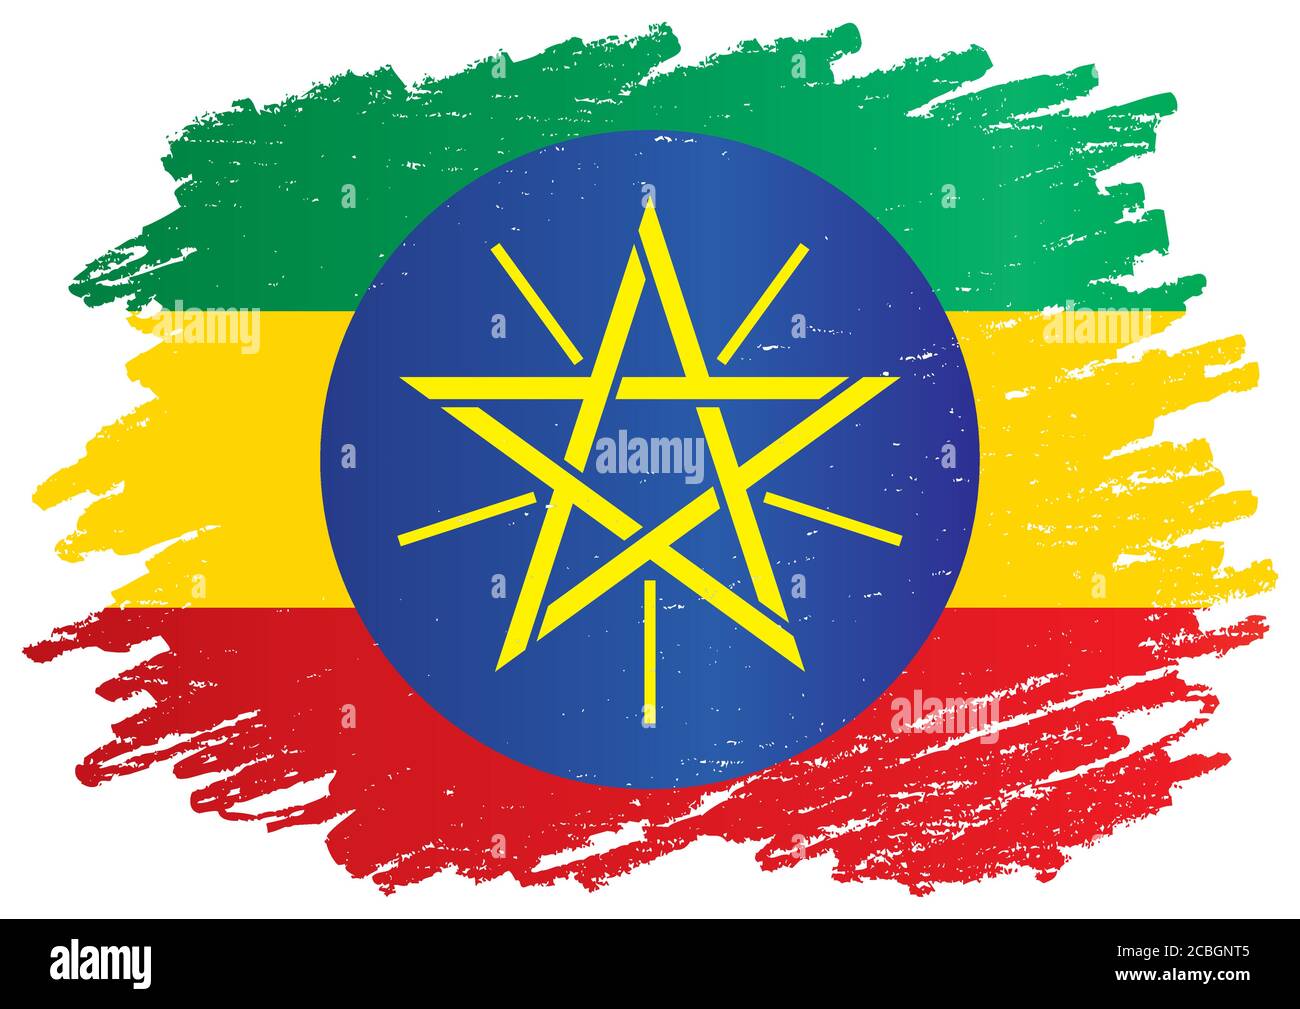 Drapeau de l'Éthiopie, République fédérale démocratique d'Éthiopie. Modèle pour la conception de prix, un document officiel avec le drapeau de l'Éthiopie. Illustration de Vecteur